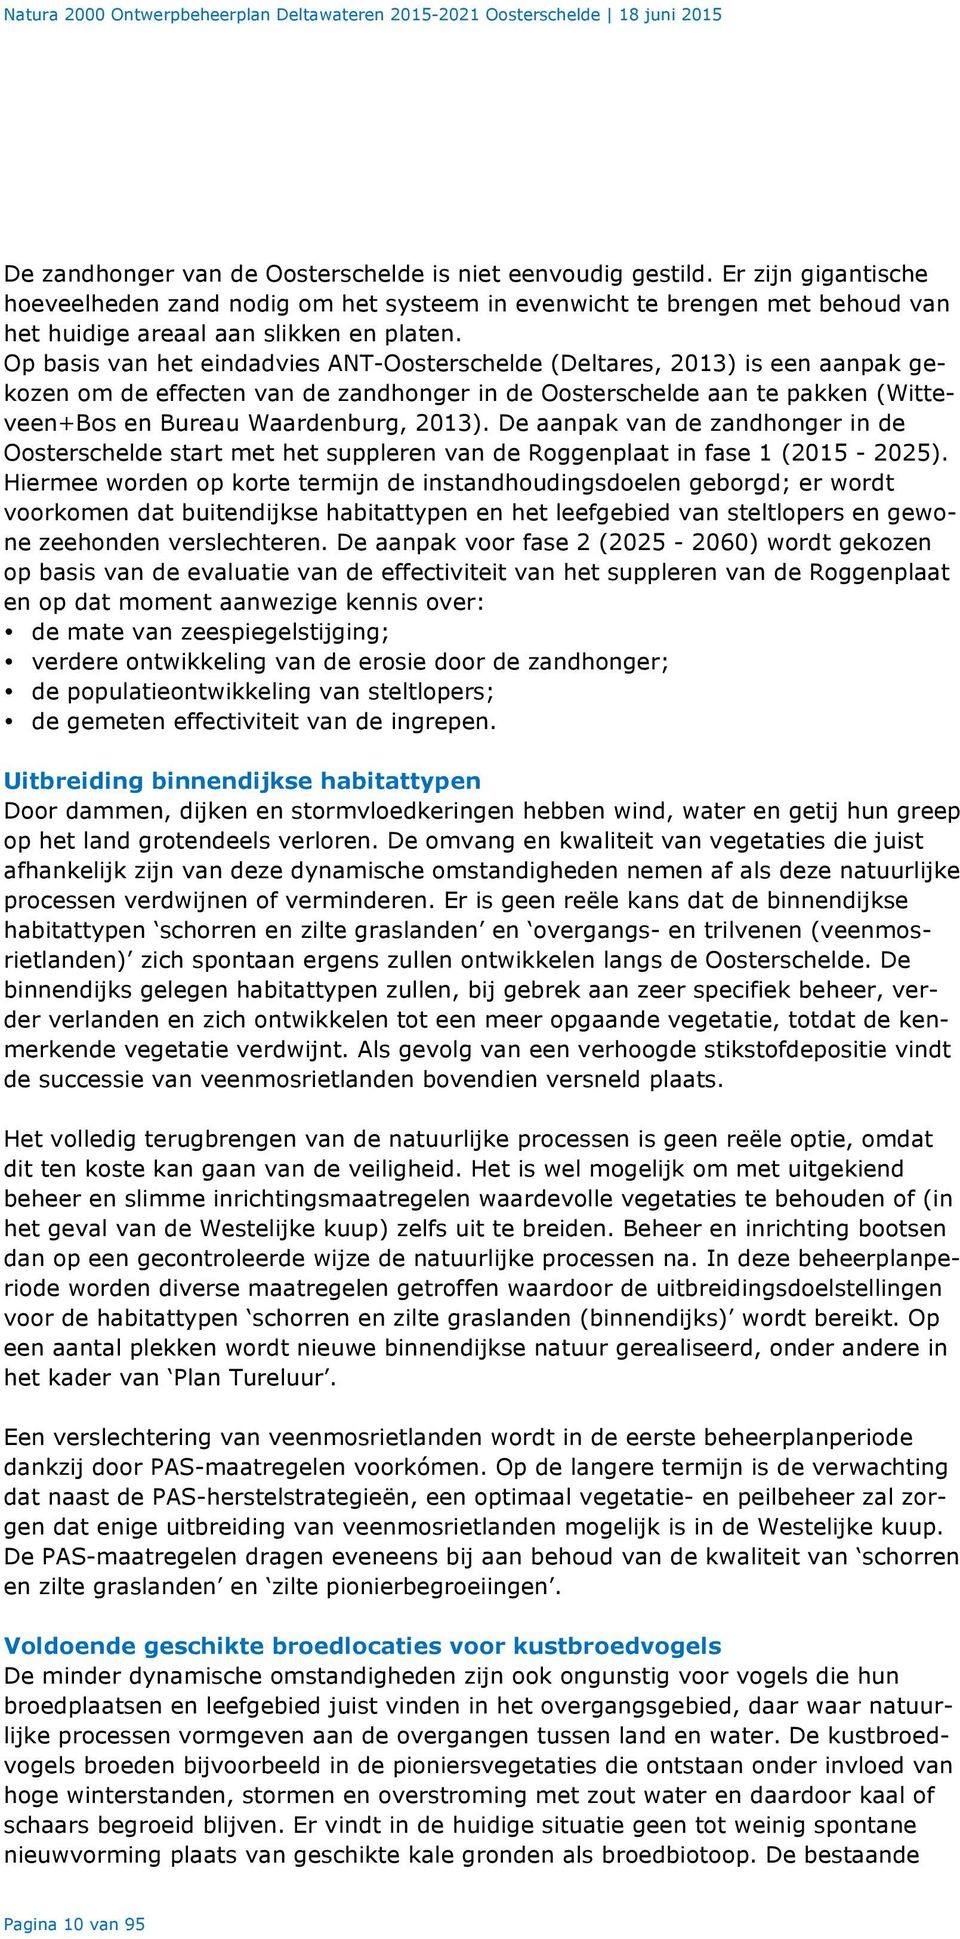 Op basis van het eindadvies ANT-Oosterschelde (Deltares, 2013) is een aanpak gekozen om de effecten van de zandhonger in de Oosterschelde aan te pakken (Witteveen+Bos en Bureau Waardenburg, 2013).